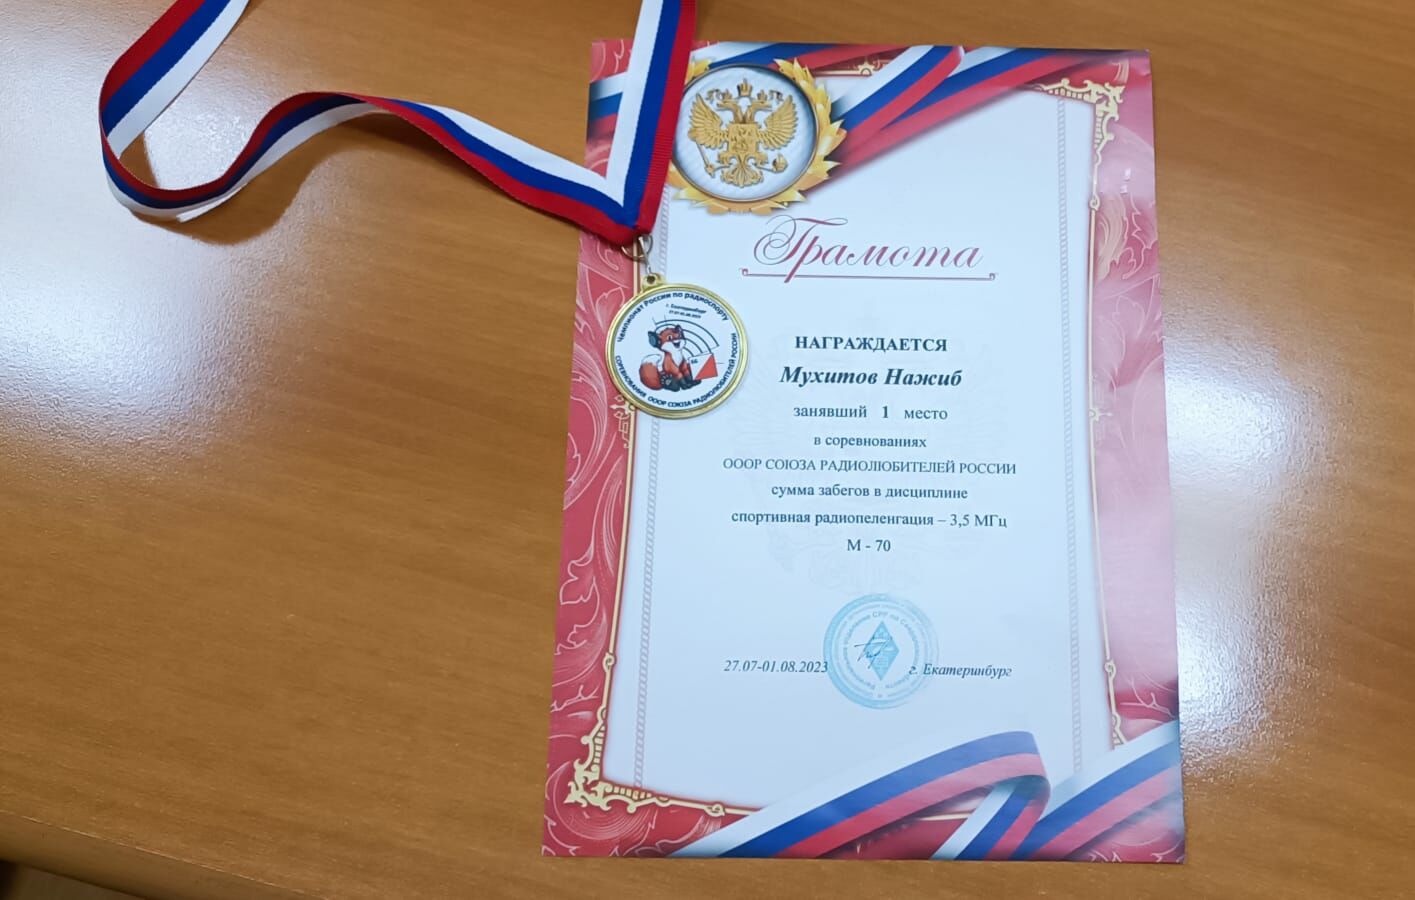 Тренер из Альметьевска занял 1 место на чемпионате России по спортивной радиопеленгации